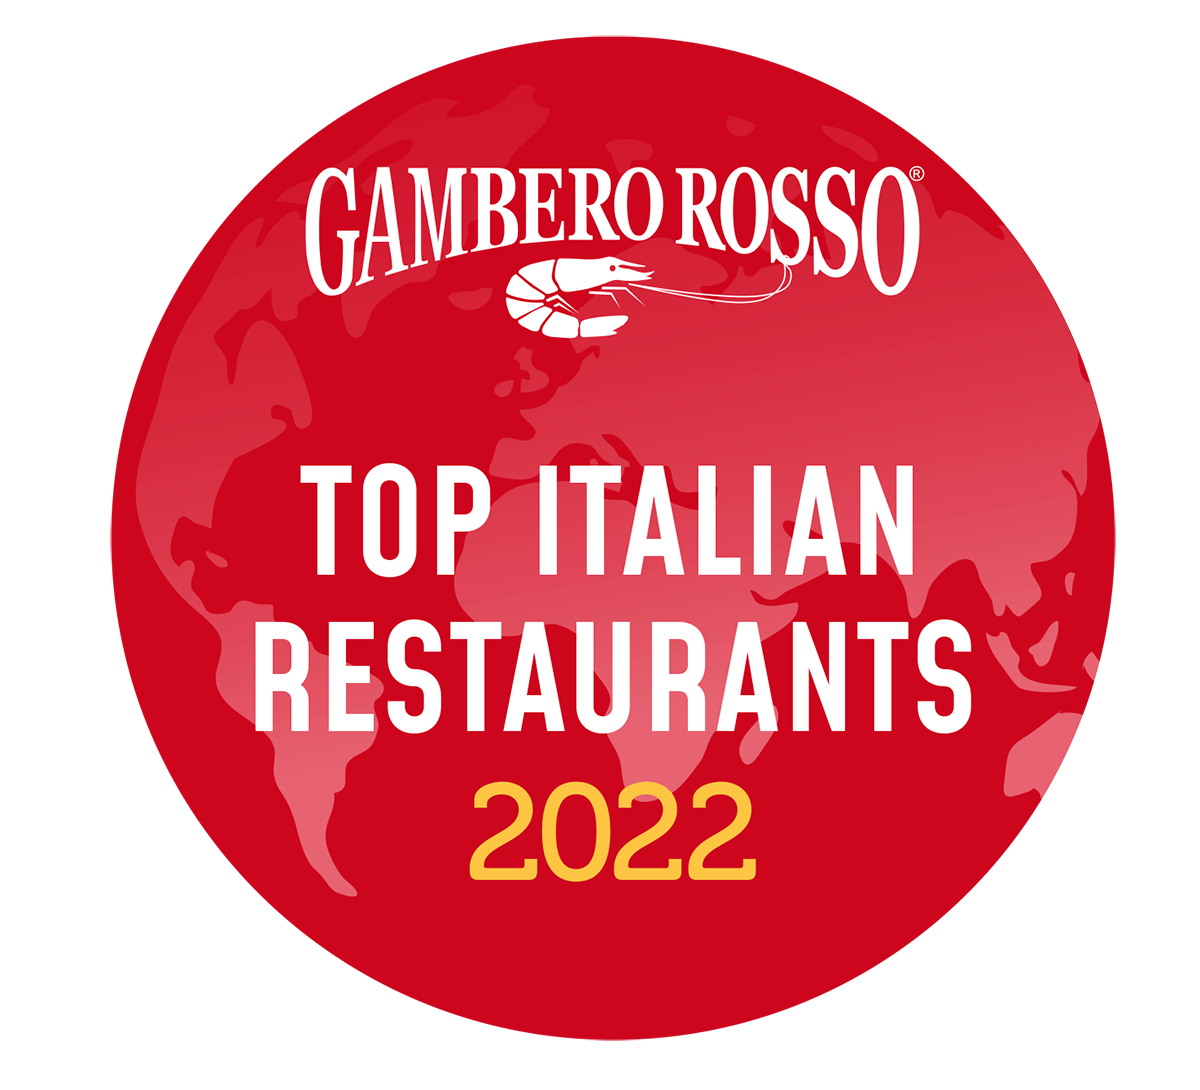 Top Italian Restaurants 2022